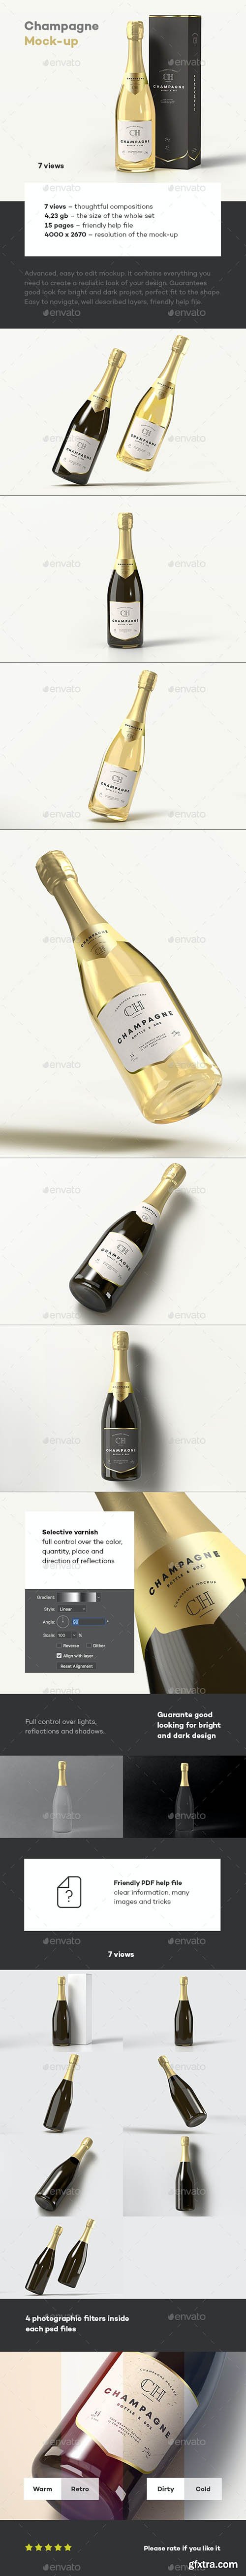 GraphicRiver - Champagne Bottle Mock-up 33684444